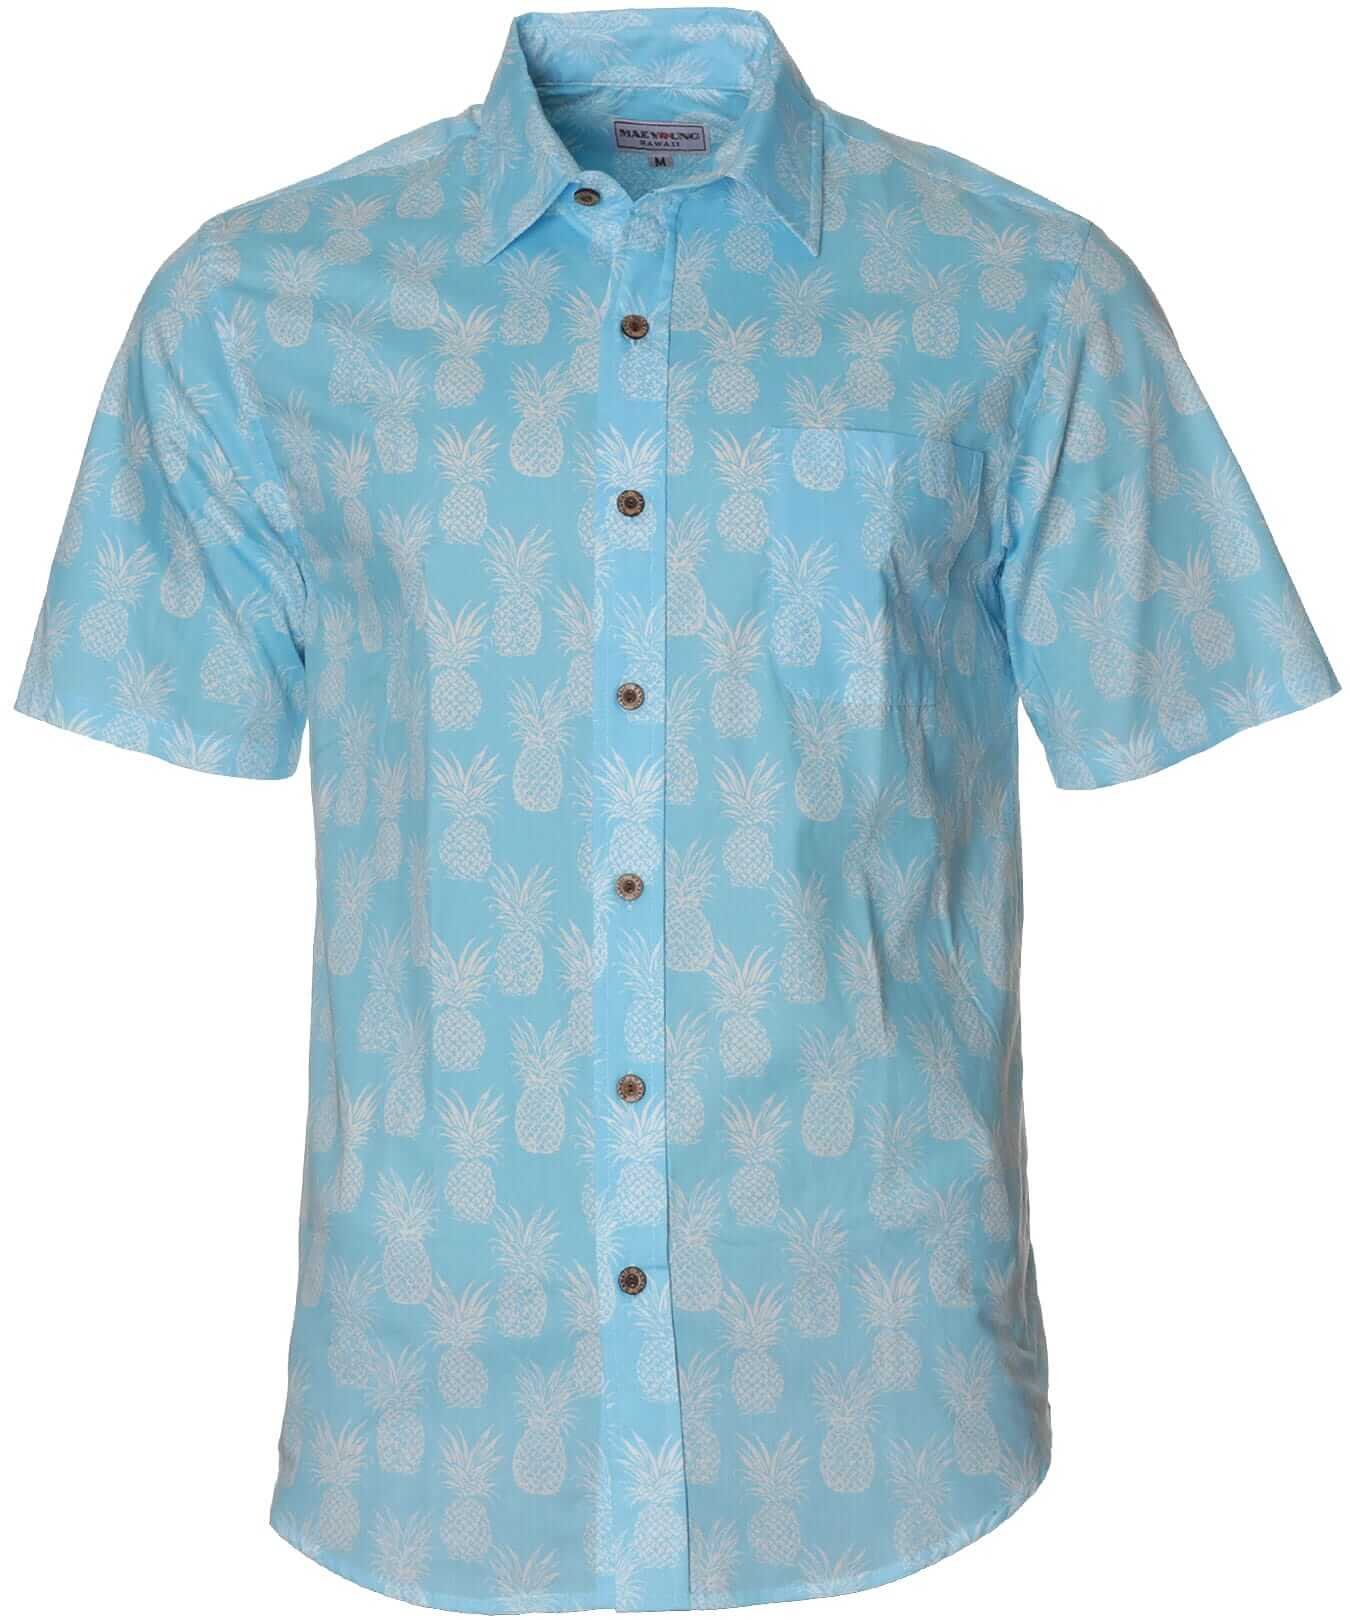 Resort Cotton Pineapples Dude Hawaiian Shirt Light Blue